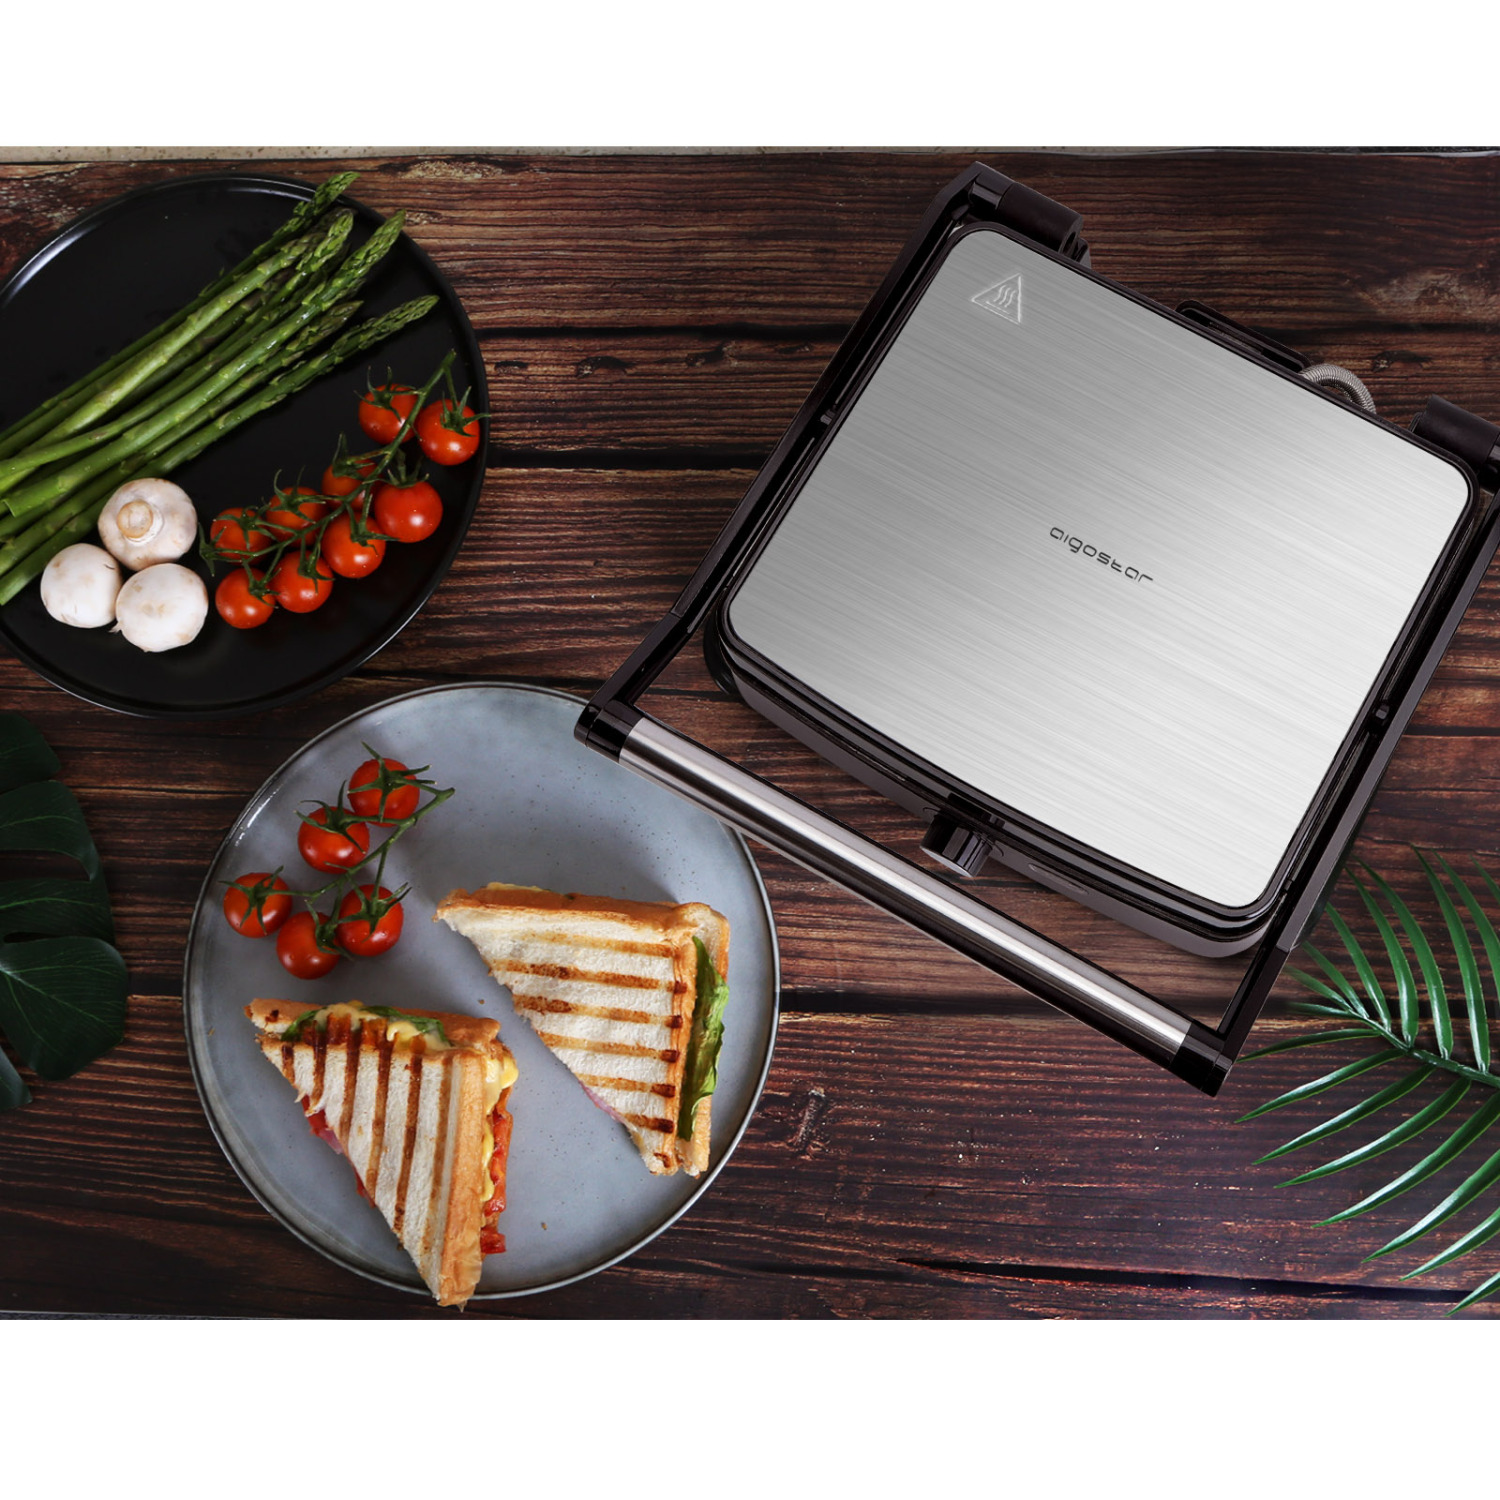 Aigostar Calore 30HHK - Grill multifonction: plancha pour viande et légumes, presse à paninis et sandwichs de 1800W avec plaques anti-adhésives, intensité réglable, et ouverture à 180º.